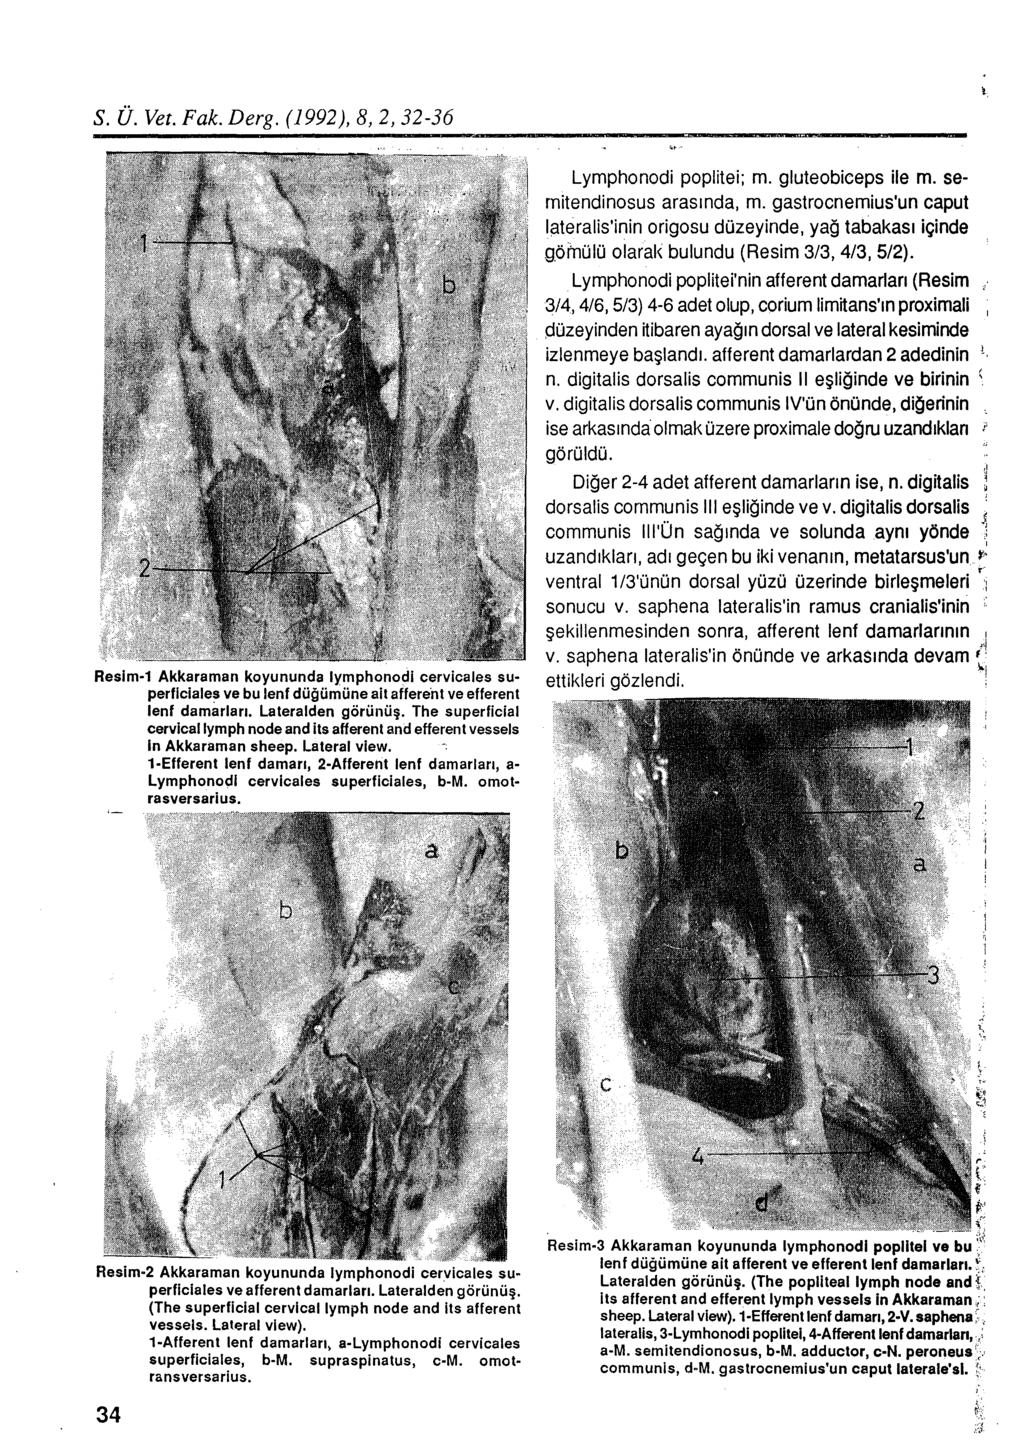 S. Ü. Vet. Fak. Derg. (1992), 8, 2, 32-36 Resim-1 Akkaraman koyununda lymphonodi cervicales superflciales ve bu lenf düğümüne ait affere'nt ve efferent lenf damarları. Lateralden görünüş.